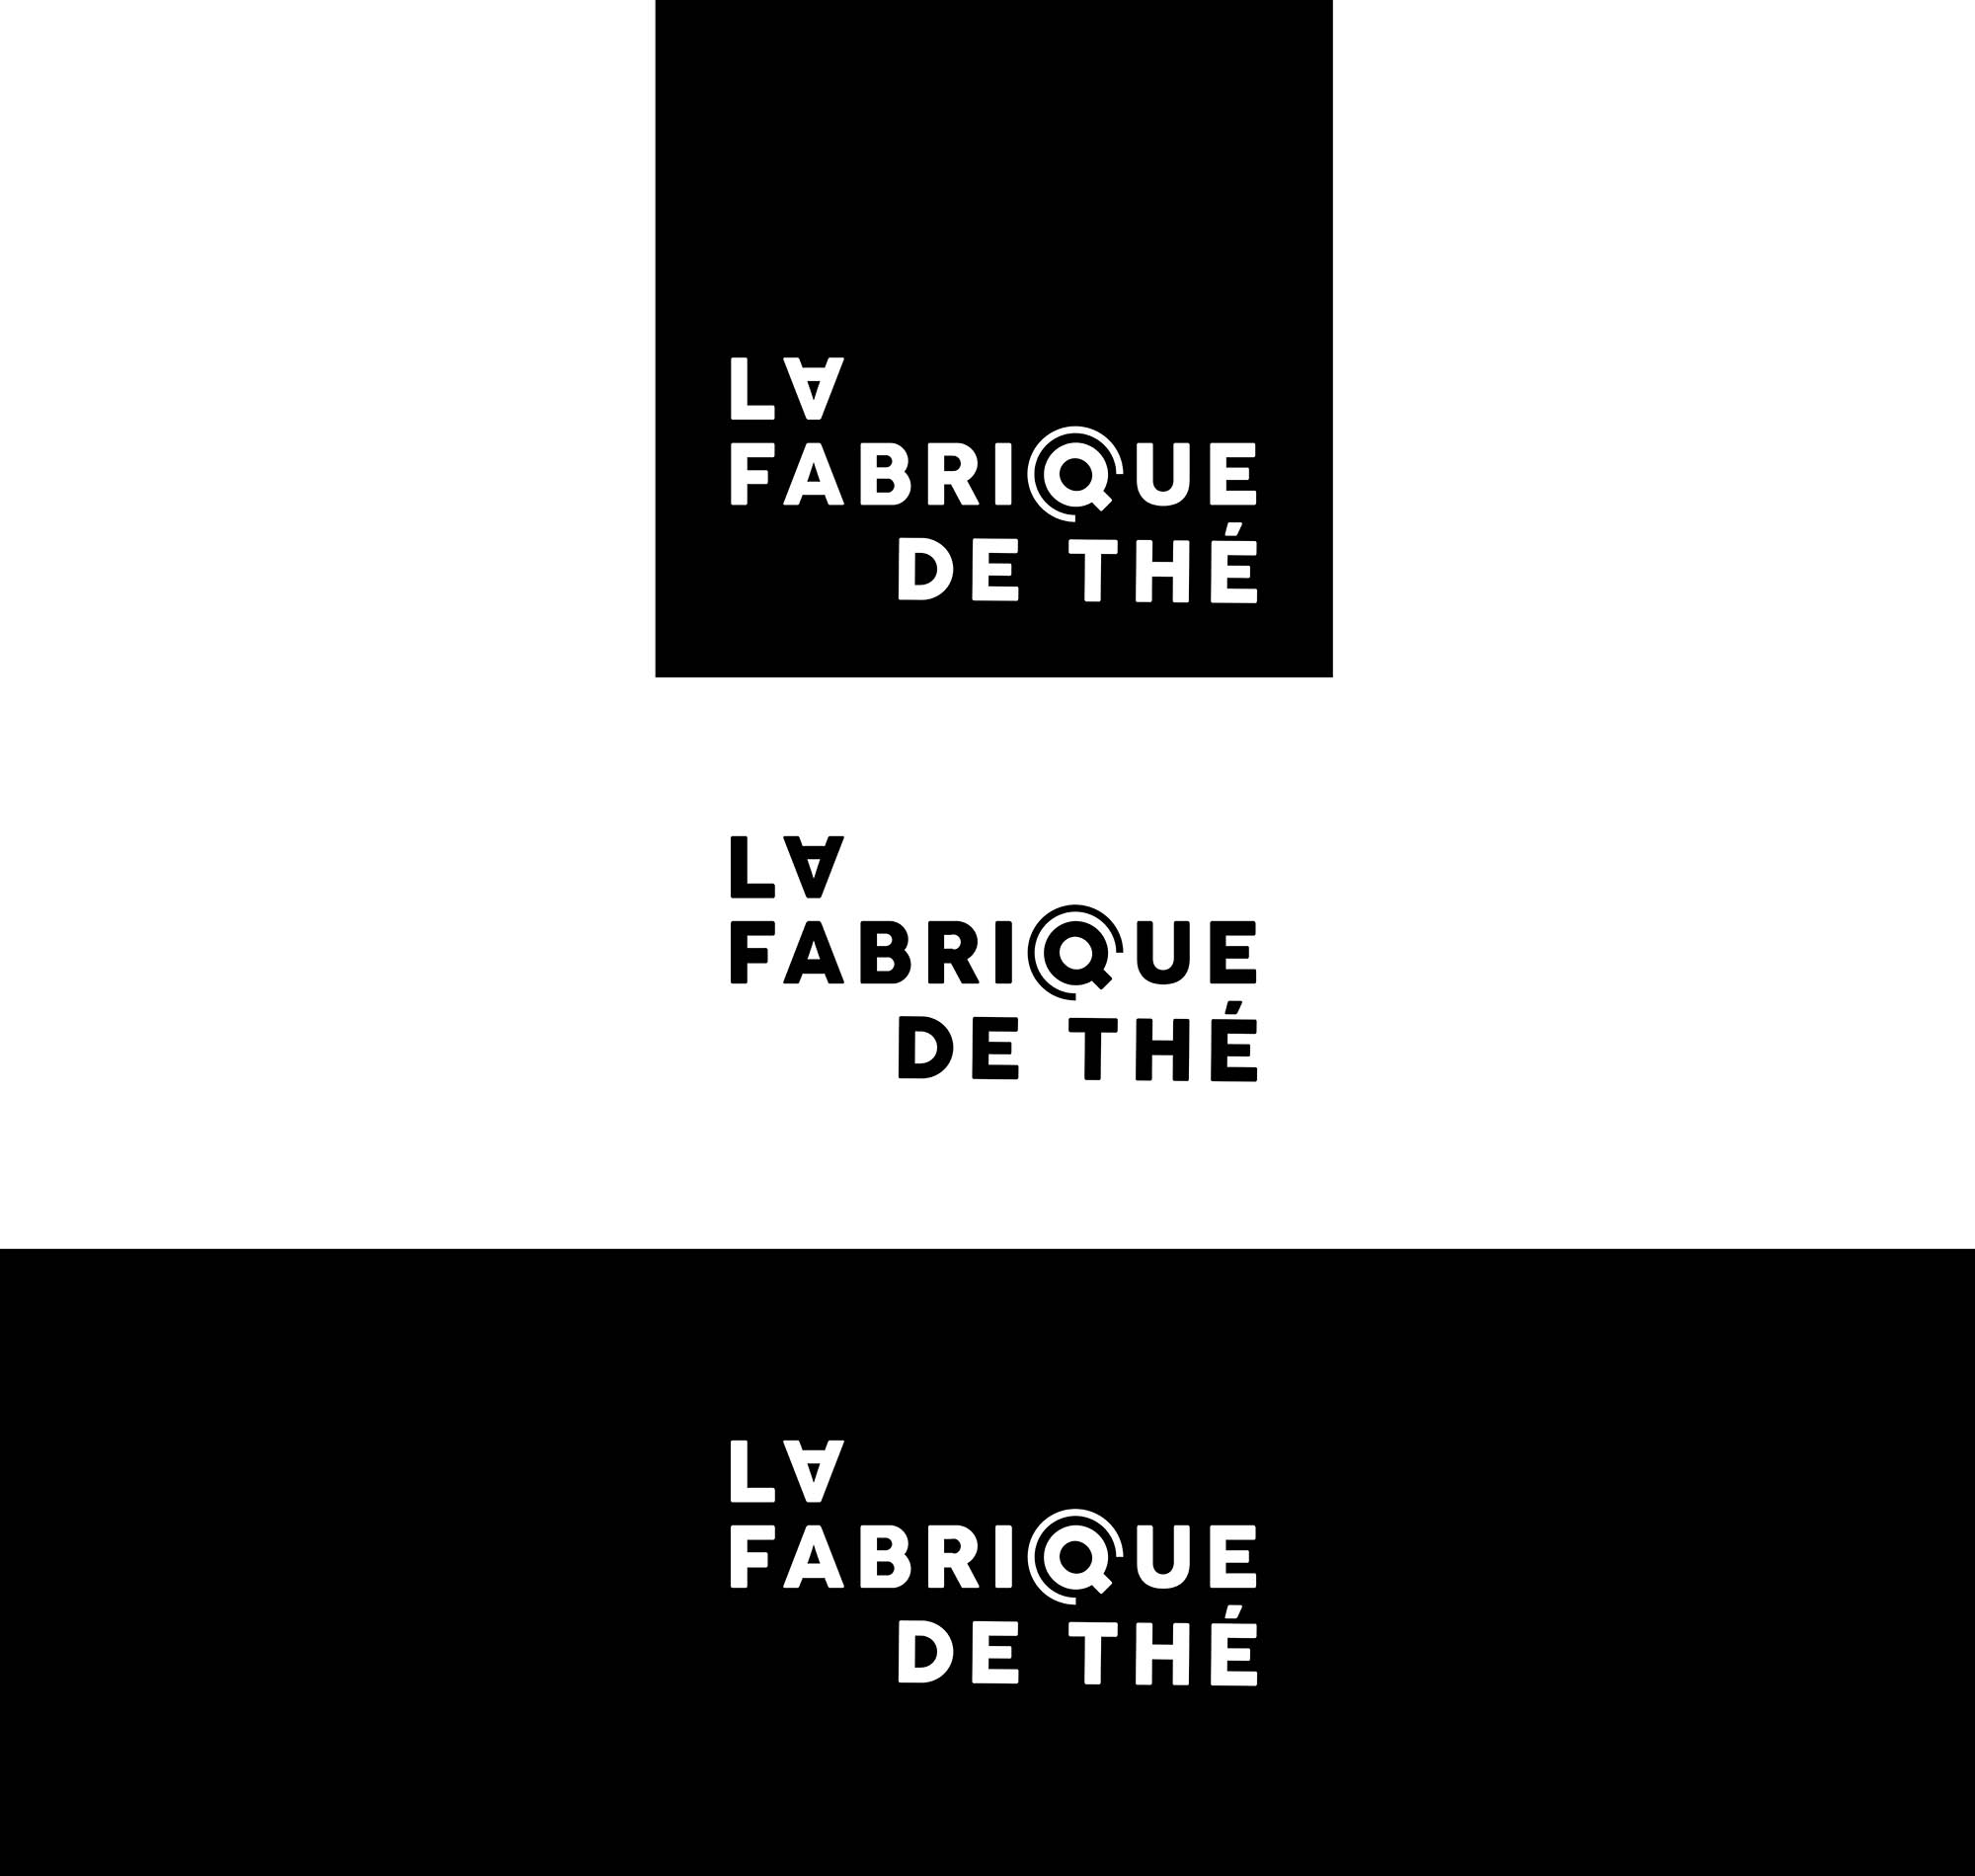 LA-FABRIQUE-DE-THE-identite-visuelle